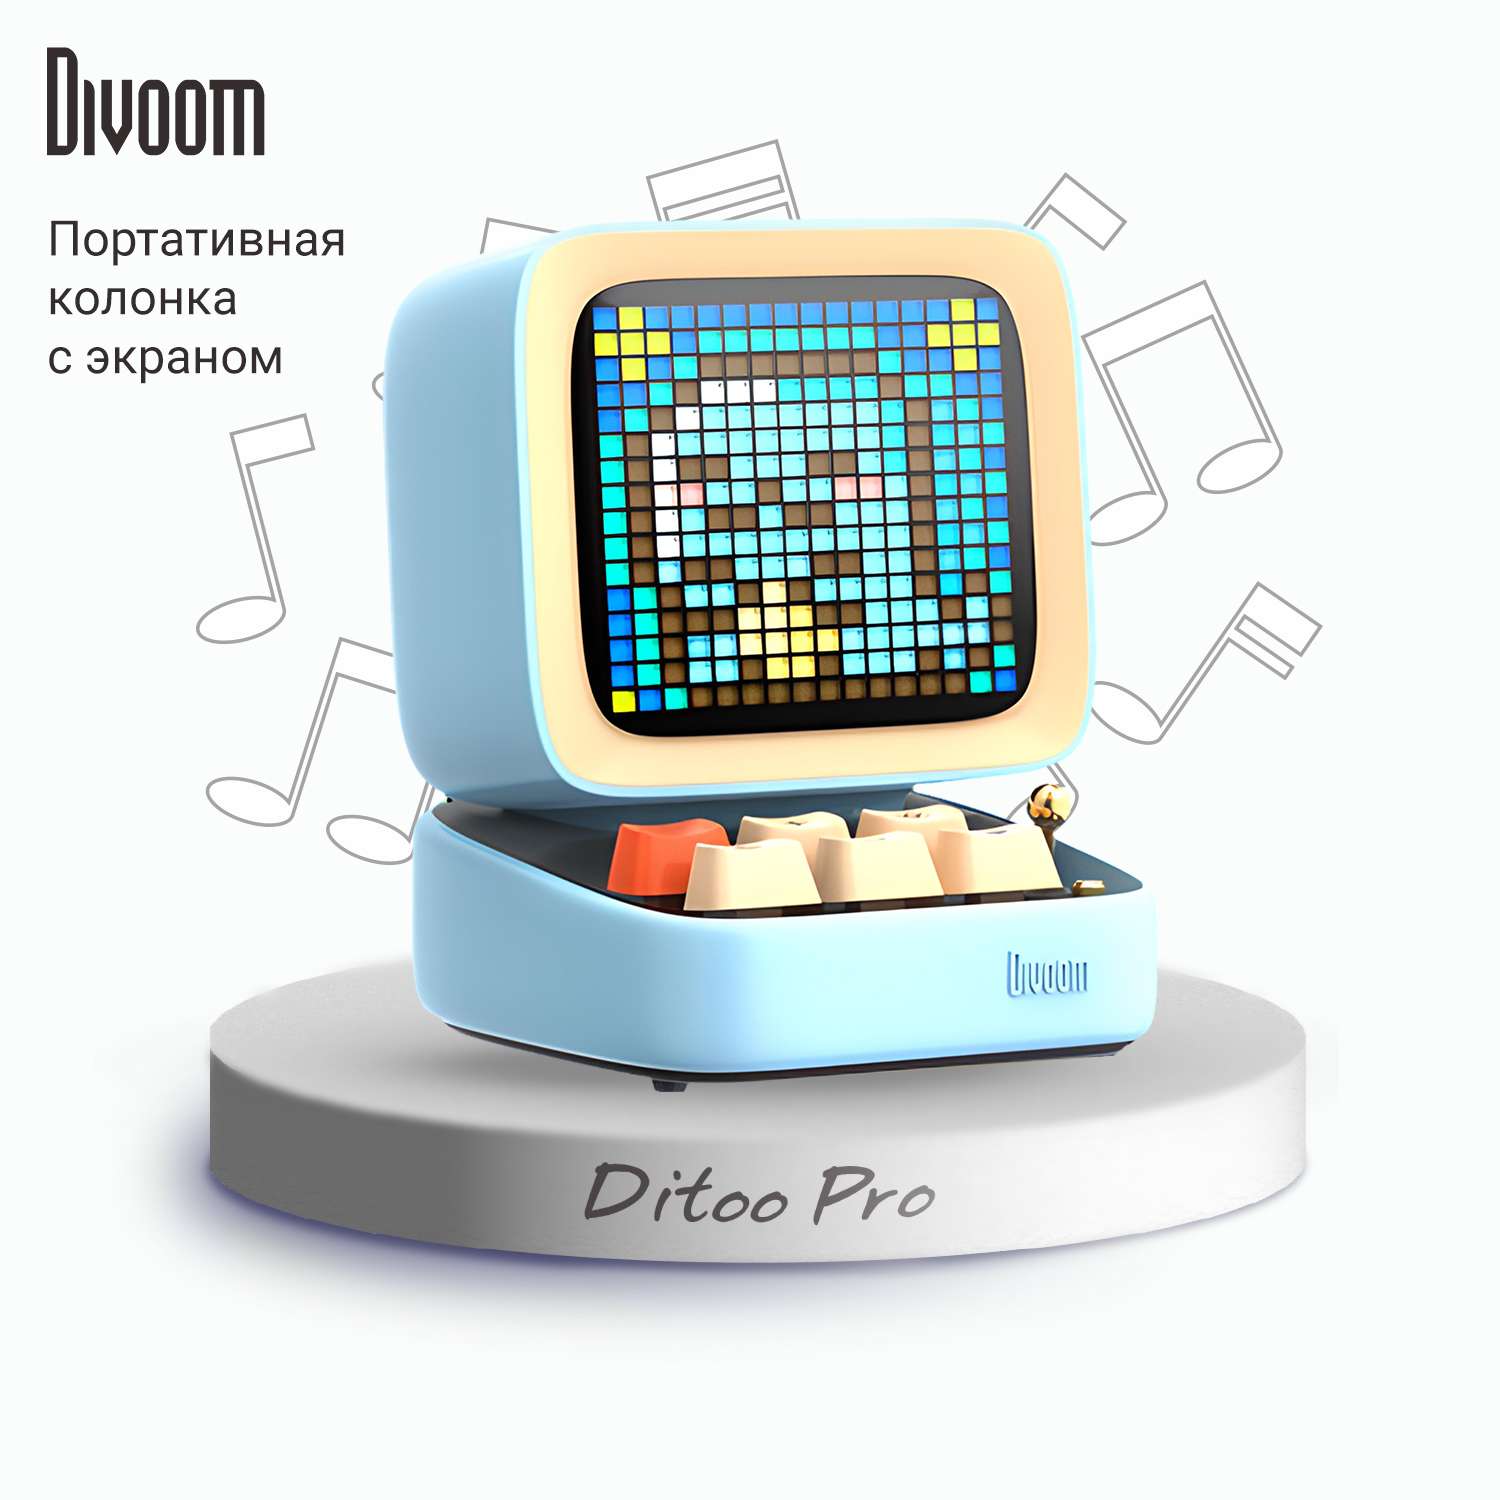 Беспроводная колонка DIVOOM портативная Ditoo Pro голубая с пиксельным LED-дисплеем - фото 1